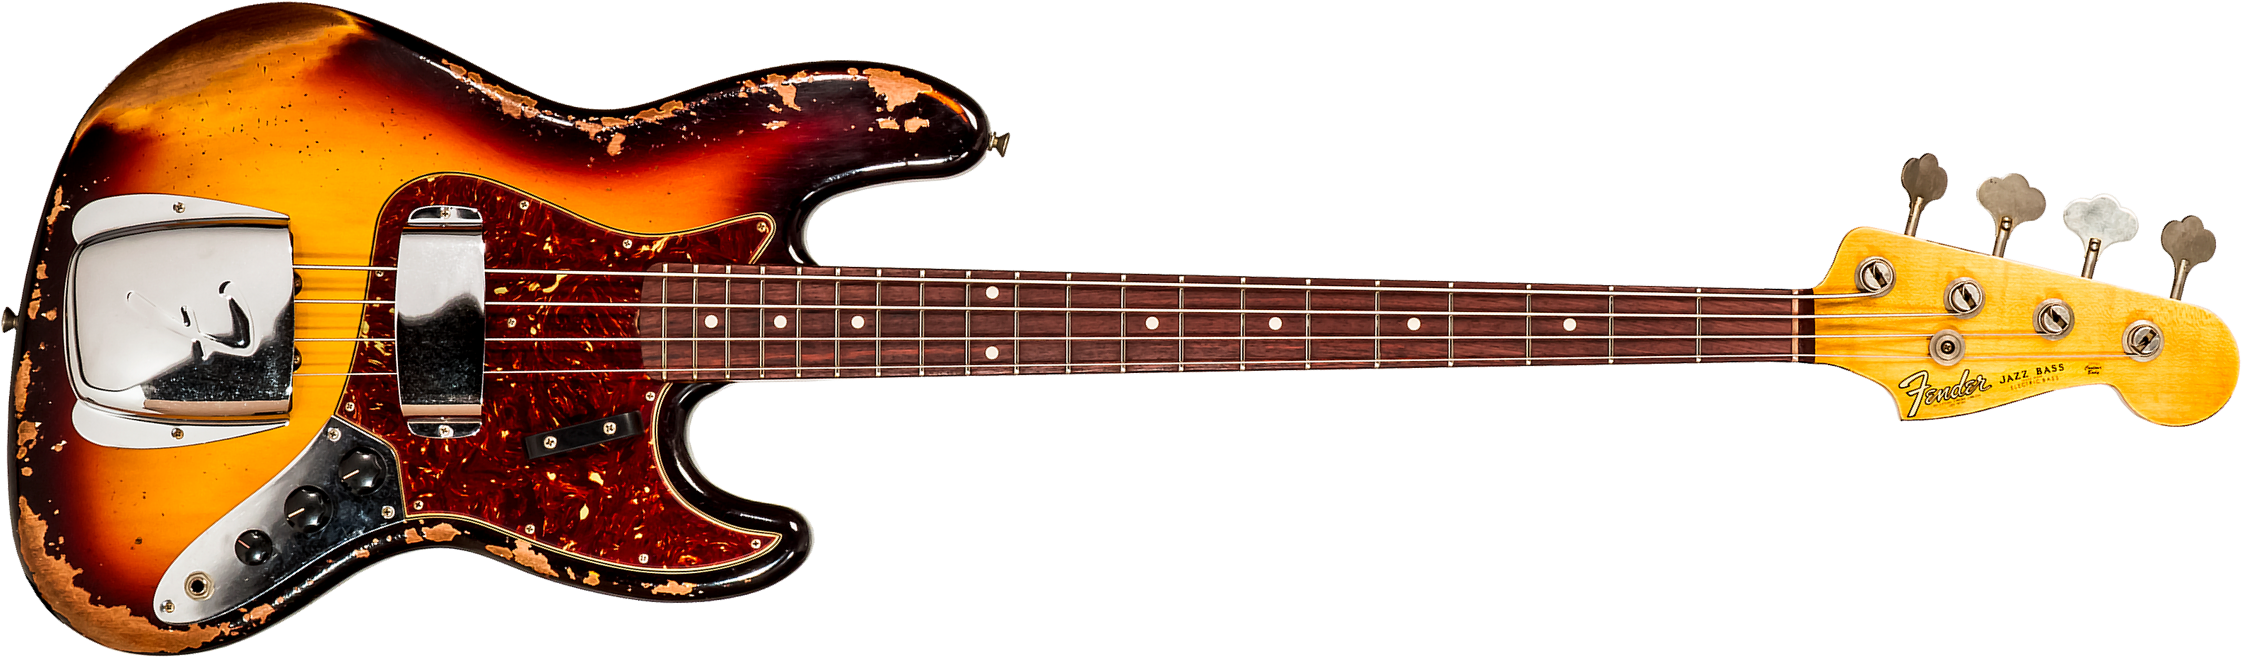 Fender Custom Shop Jazz Bass 1961 Rw #cz572155 - Heavy Relic 3-color Sunburst - Basse Électrique Solid Body - Main picture